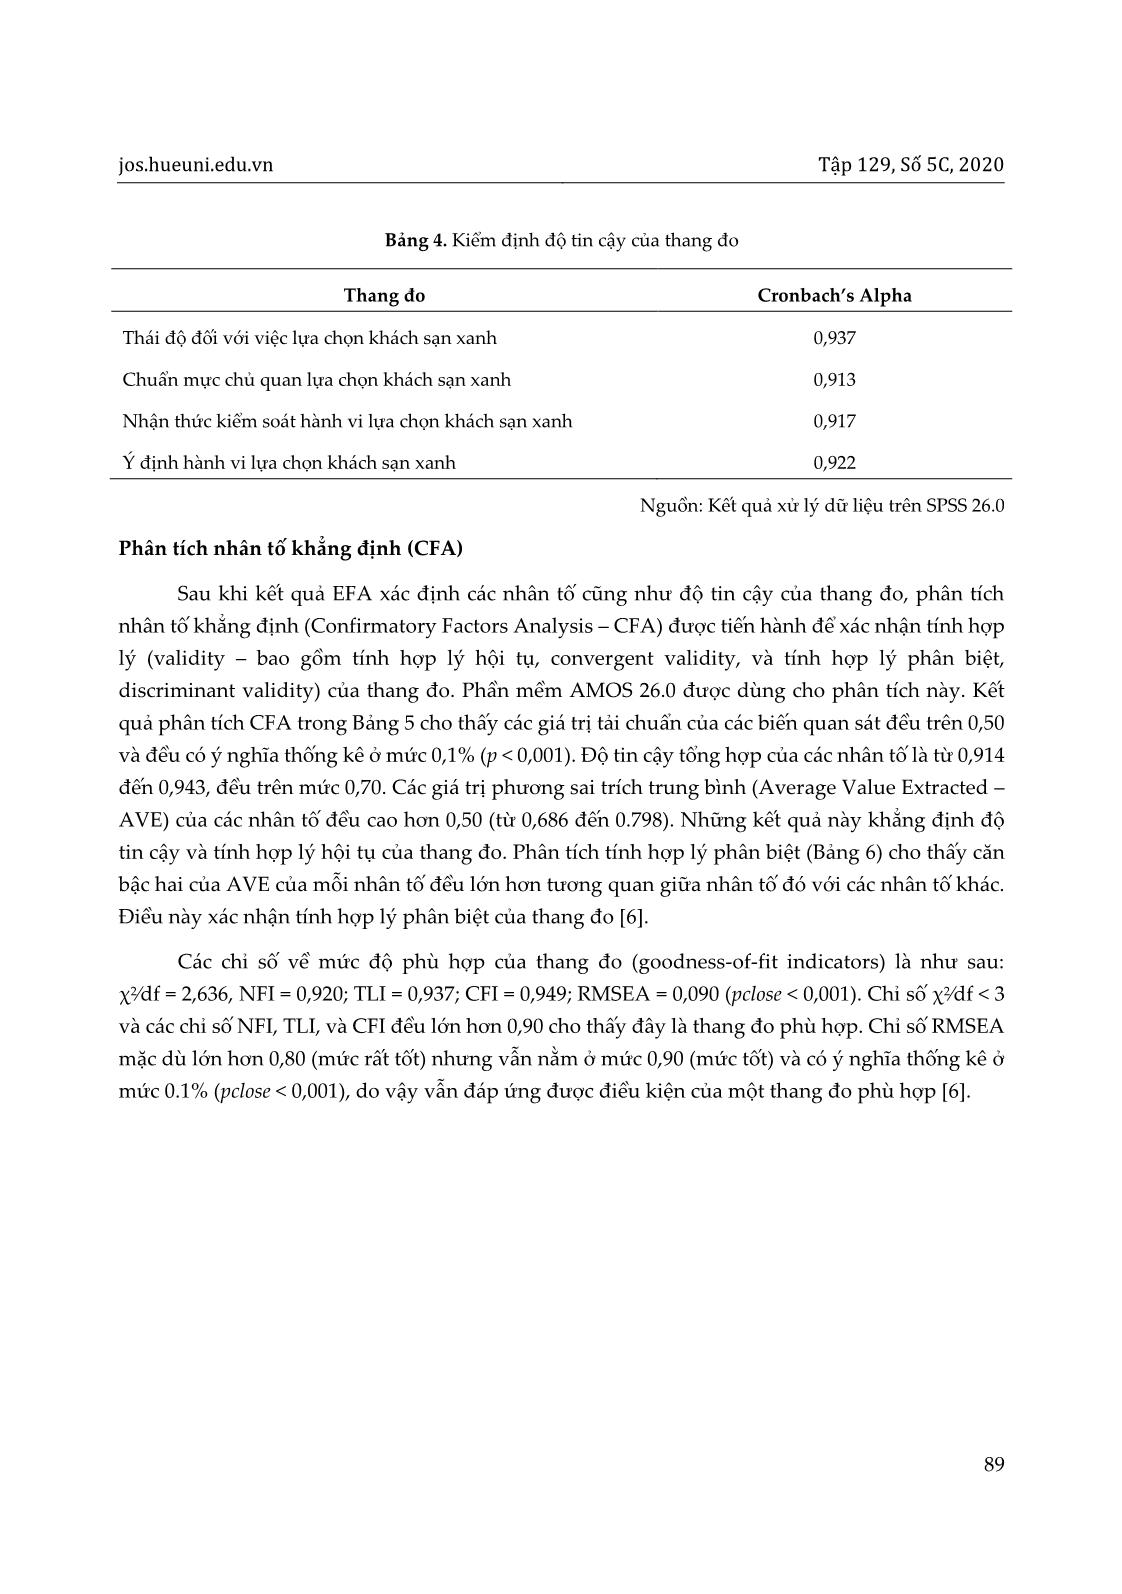 Ứng dụng lý thuyết hành vi dự định (TPB) trong nghiên cứu ý định lựa chọn khách sạn xanh của du khách tại thành phố Đà Nẵng trang 9